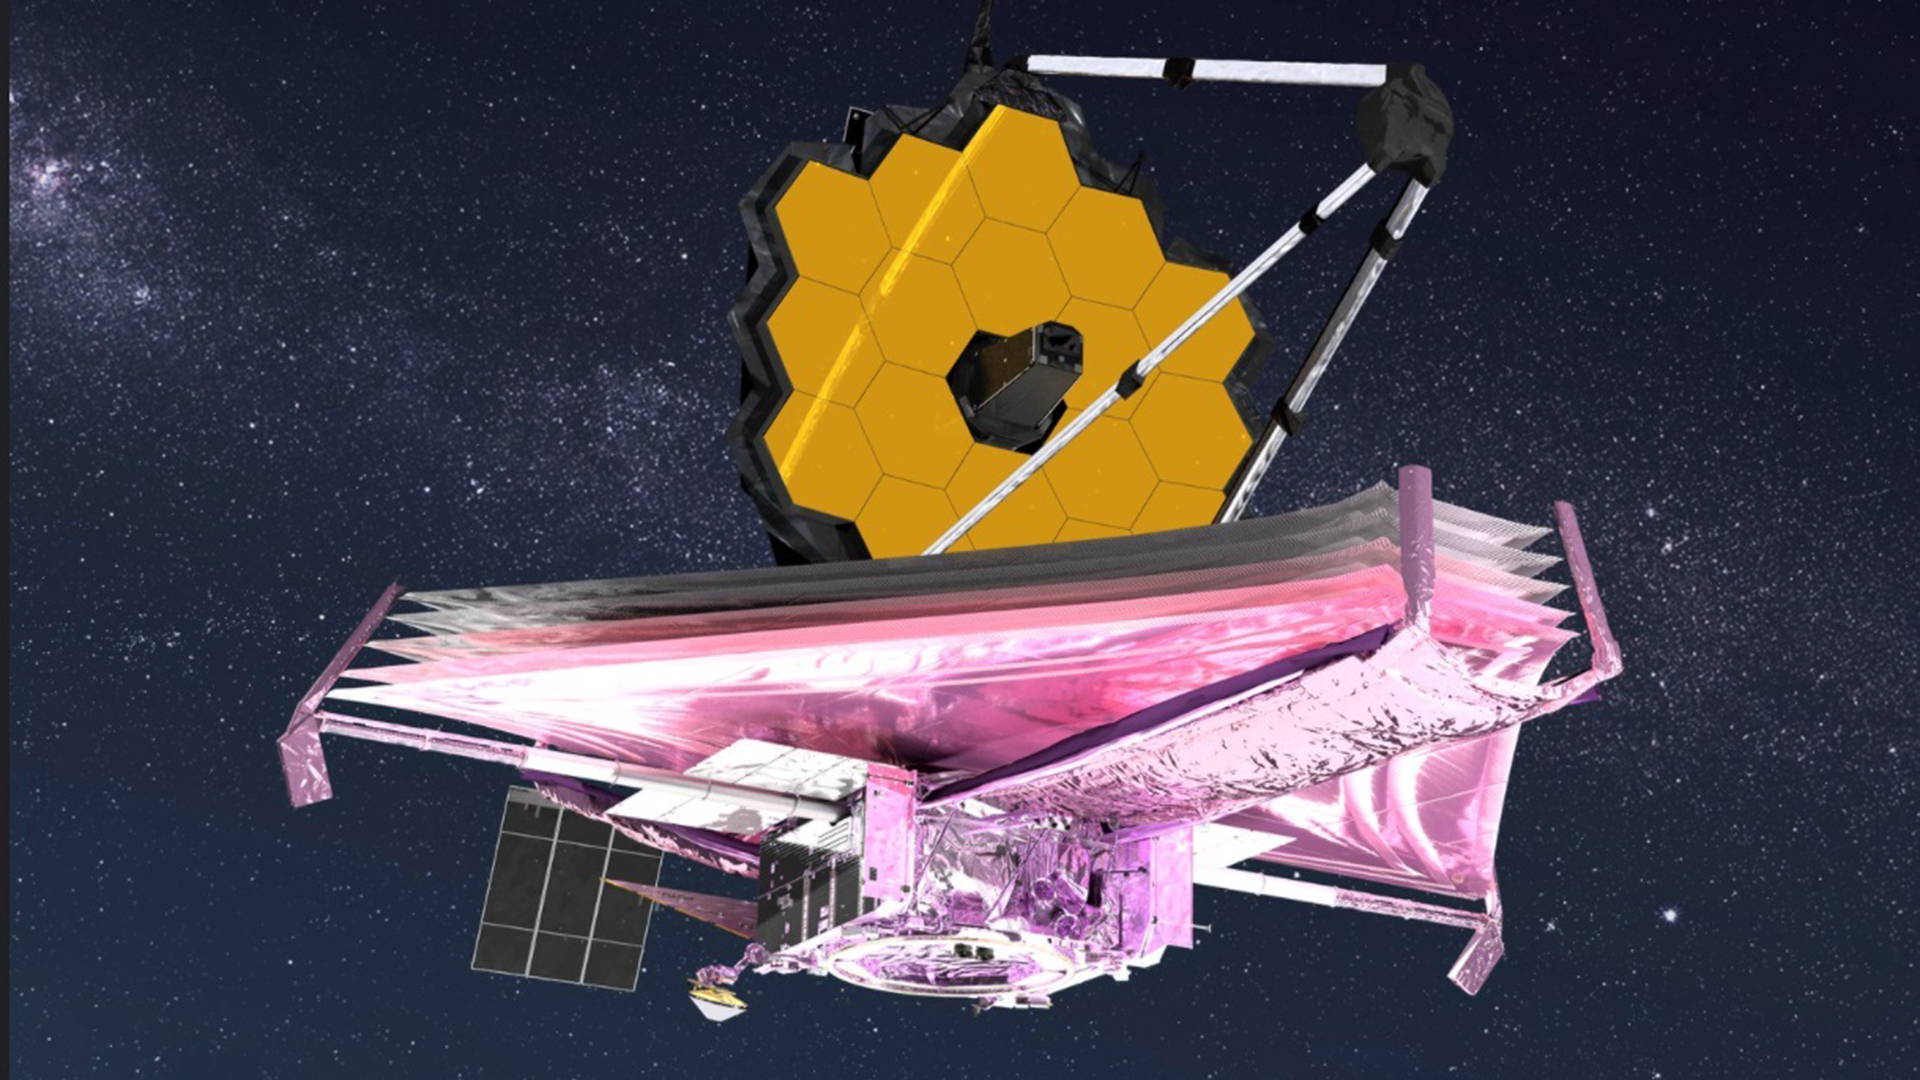 Die künstlerische Darstellung des James Webb Weltraumteleskops im All zeigt alle Hauptelemente vollständig entfaltet.  | picture alliance/dpa/NASA GSFC/C